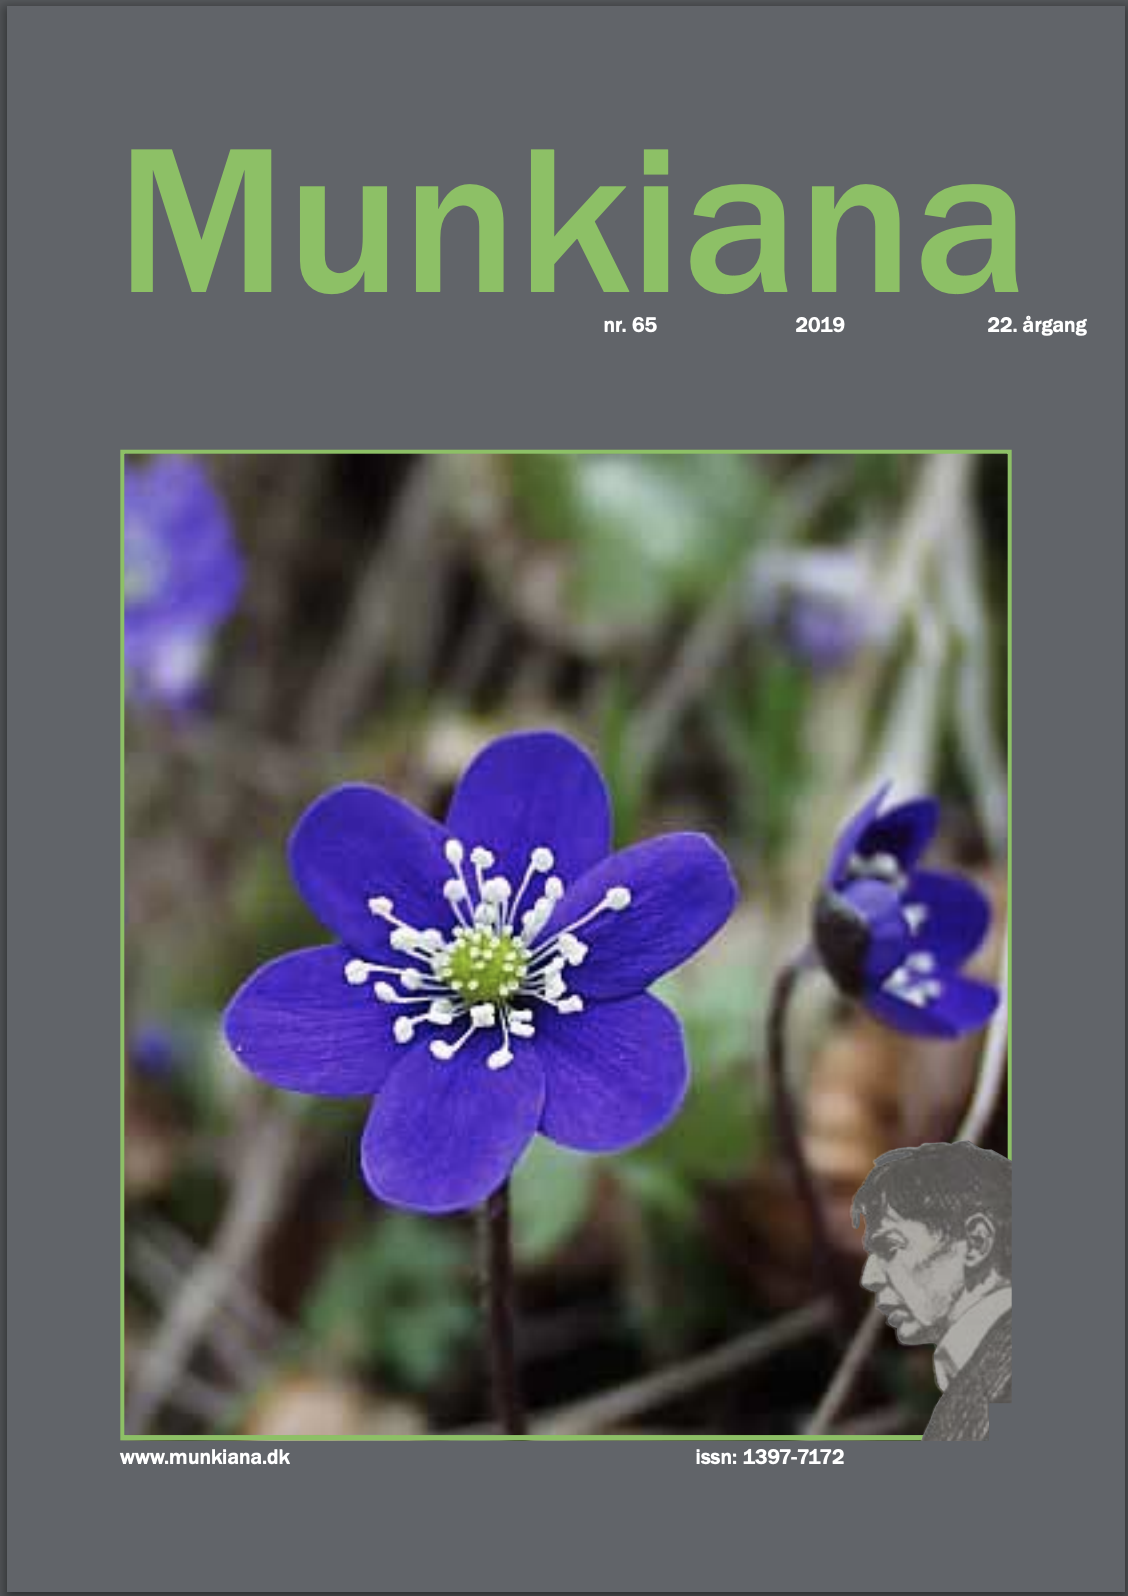 Klik på billedet for at downloade PDF med Munkiana nr. 65